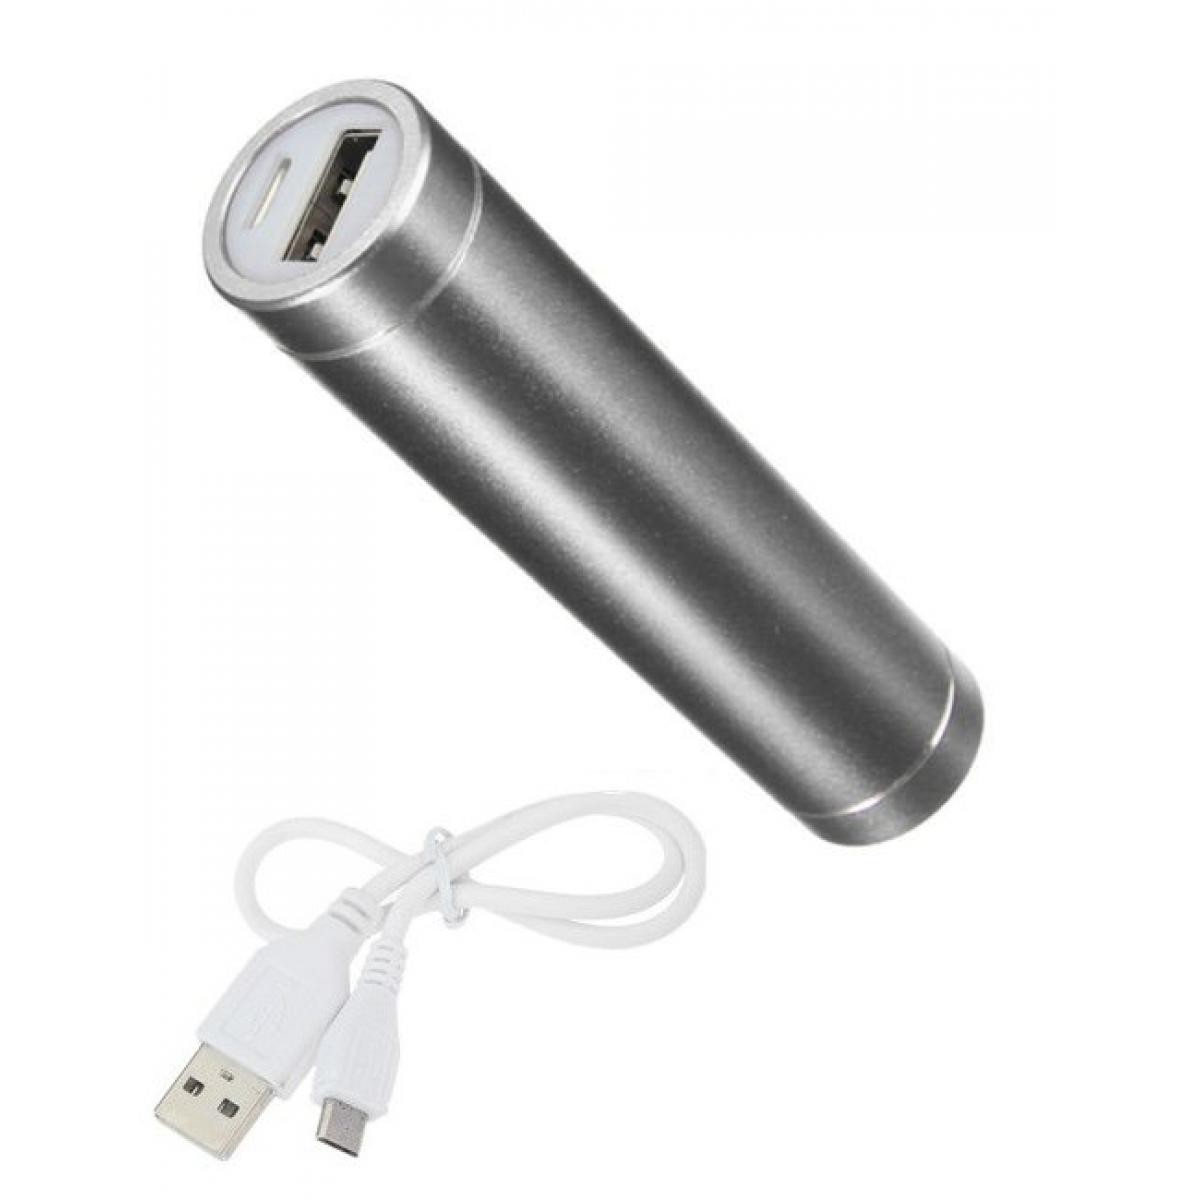 Shot - Batterie Chargeur Externe pour SAMSUNG Galaxy S10e Power Bank 2600mAh avec Cable USB/Mirco USB Secours Telephone (ARGENT) - Chargeur secteur téléphone